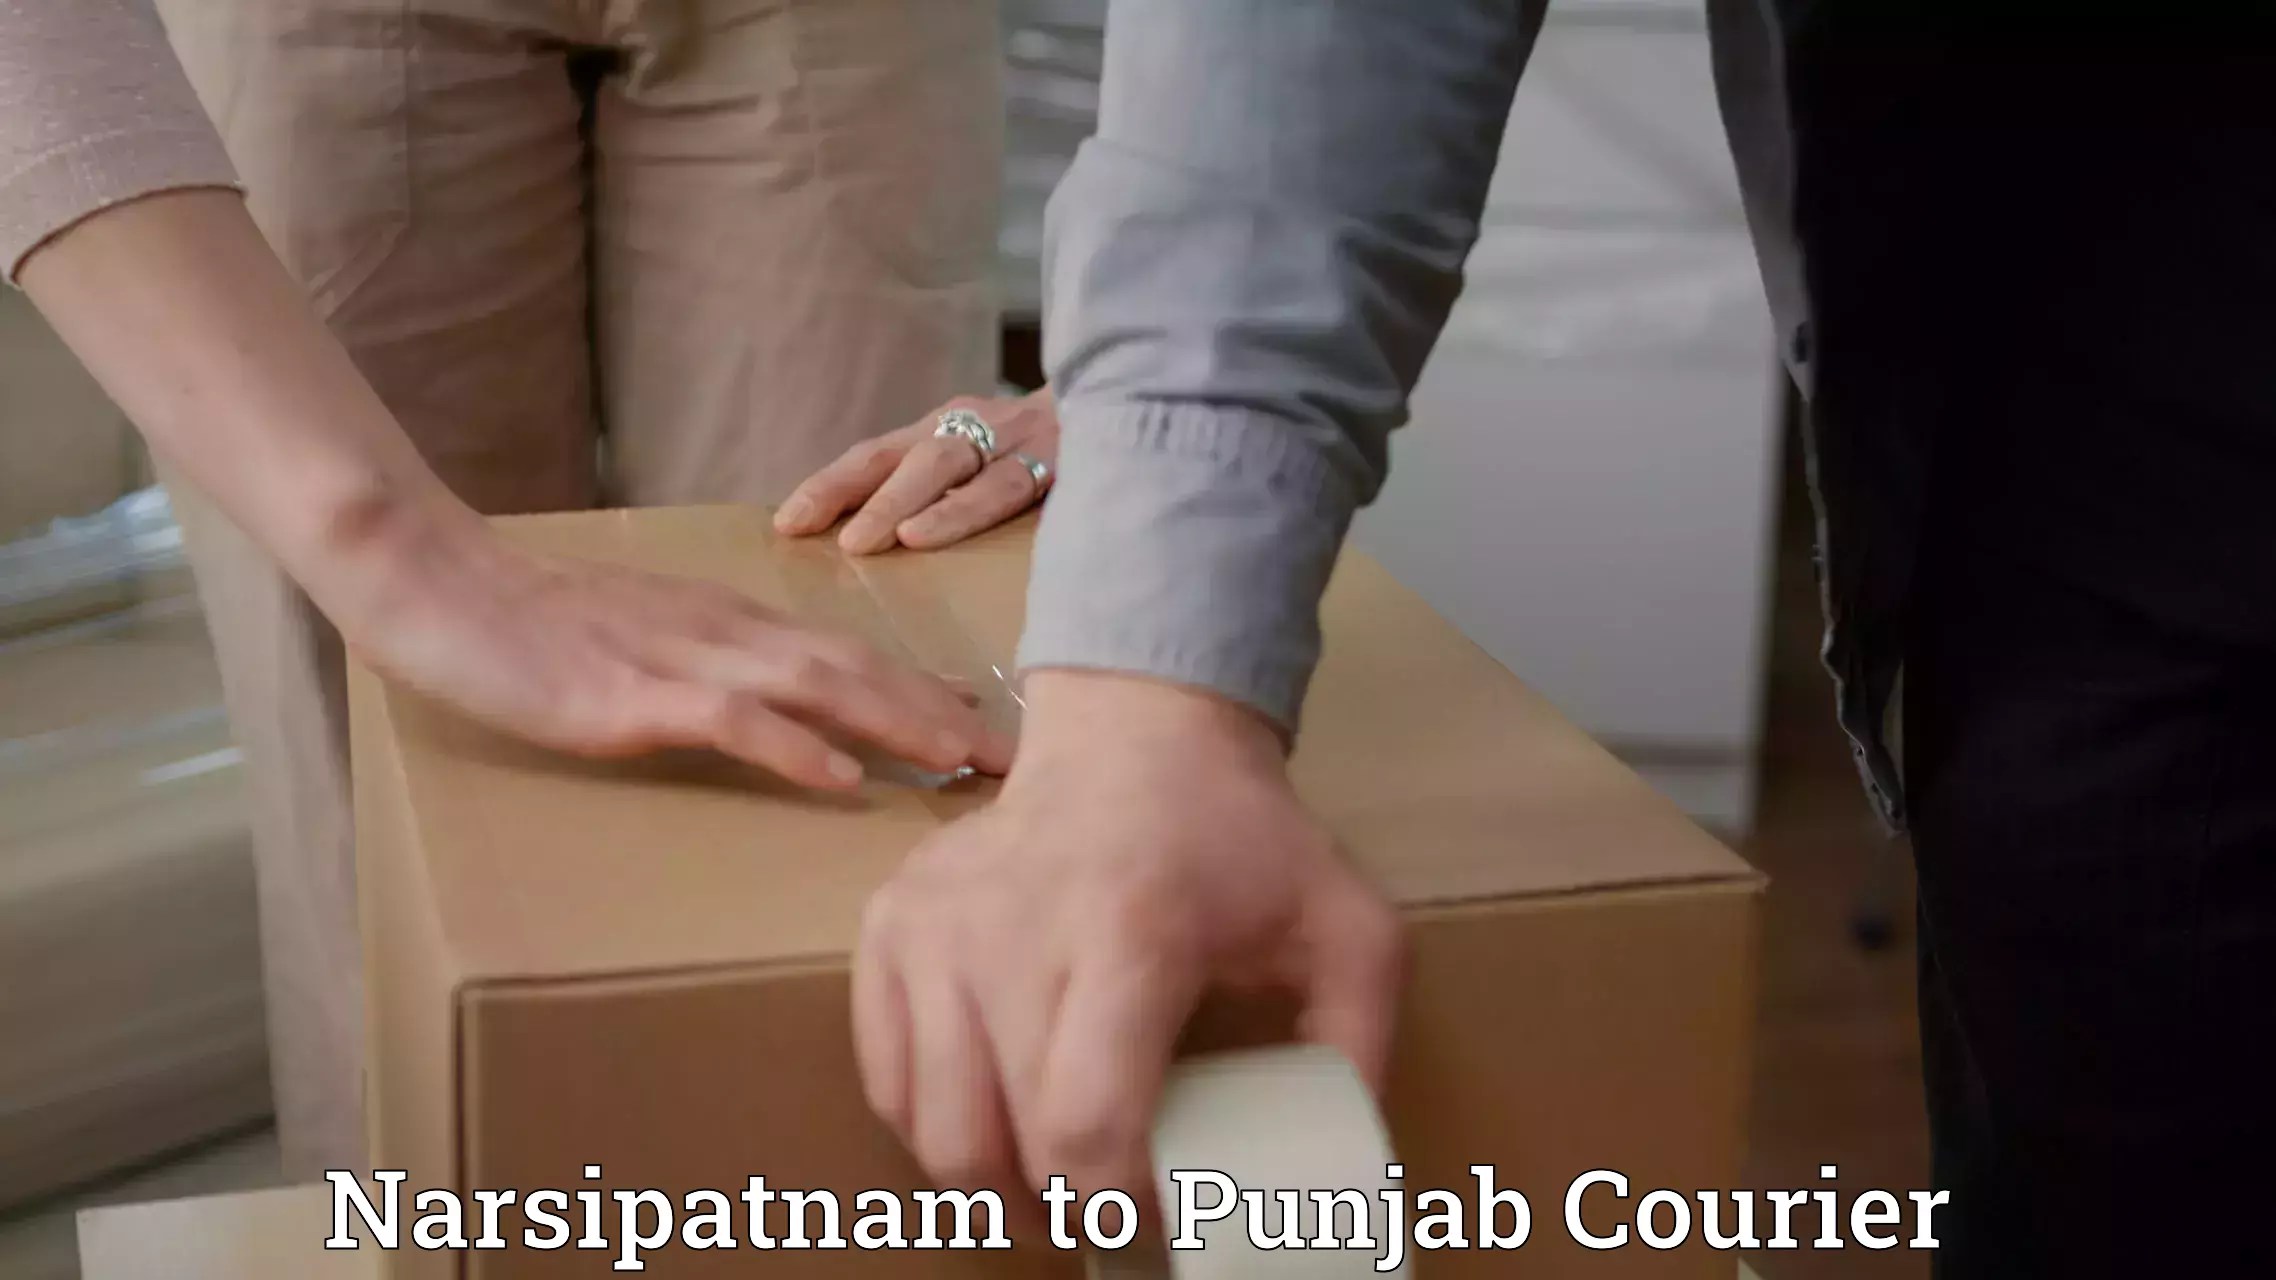 Parcel service for businesses Narsipatnam to Punjab